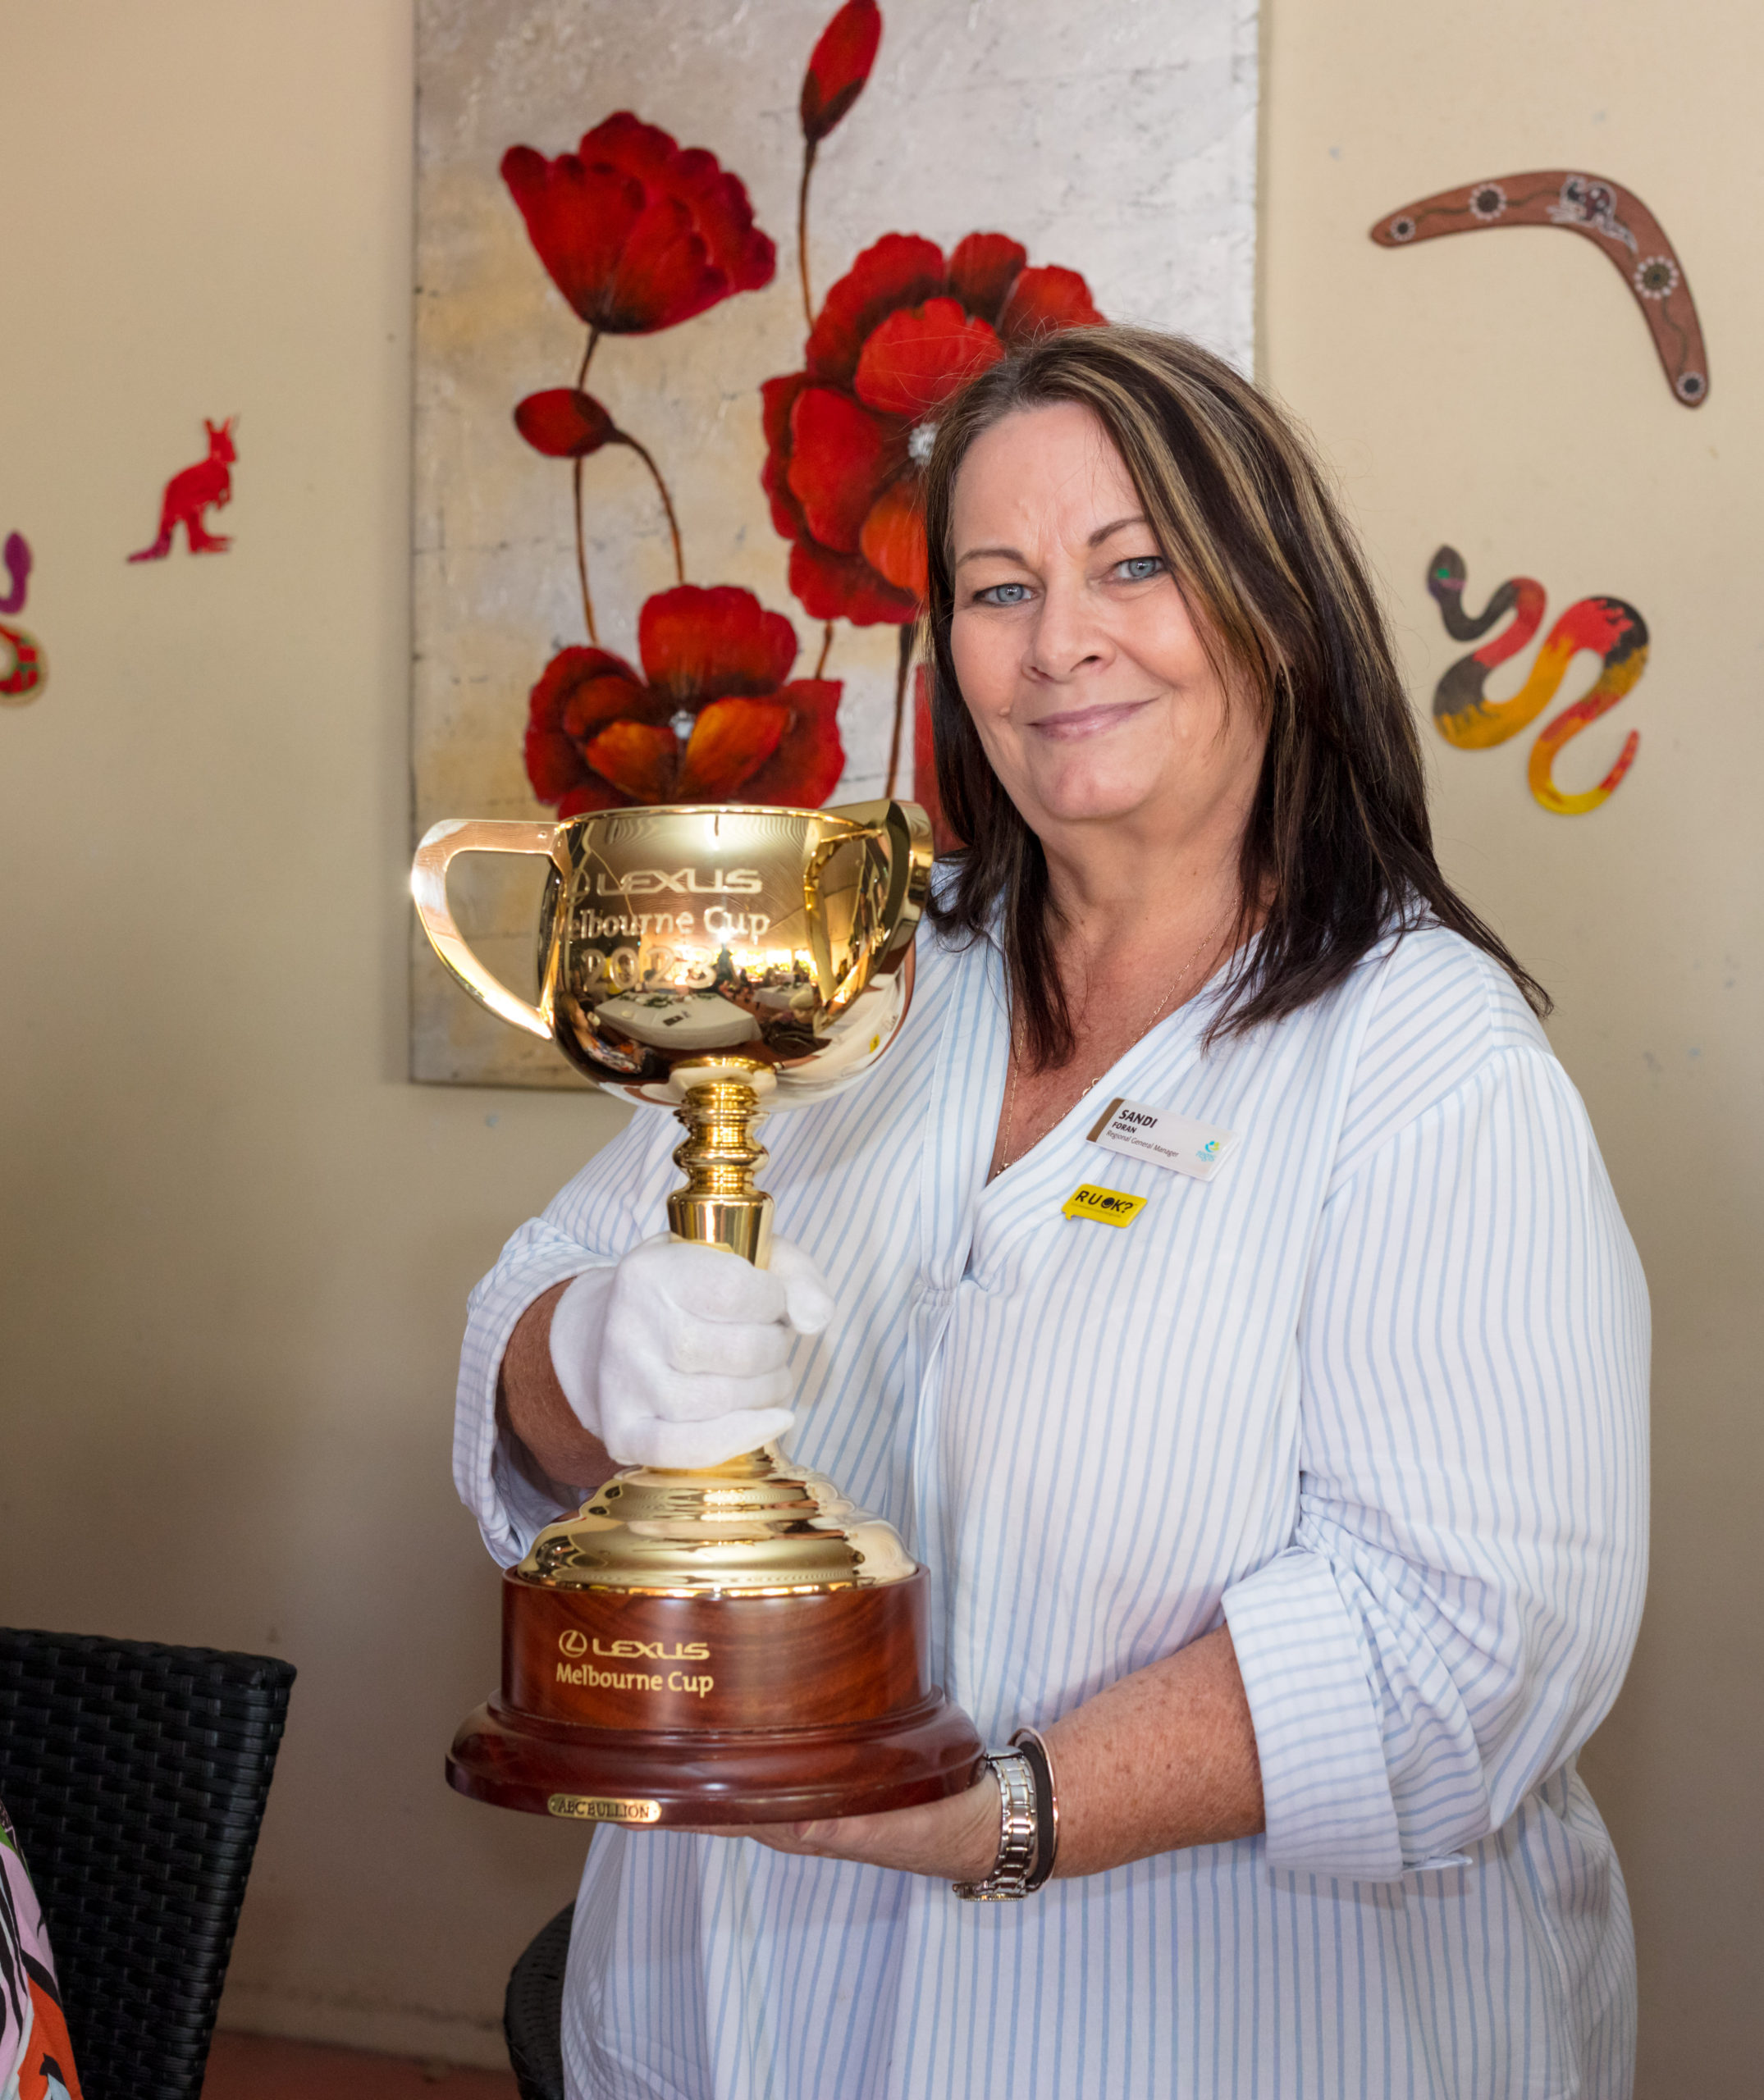 Regis Tiwi Melbourne Cup